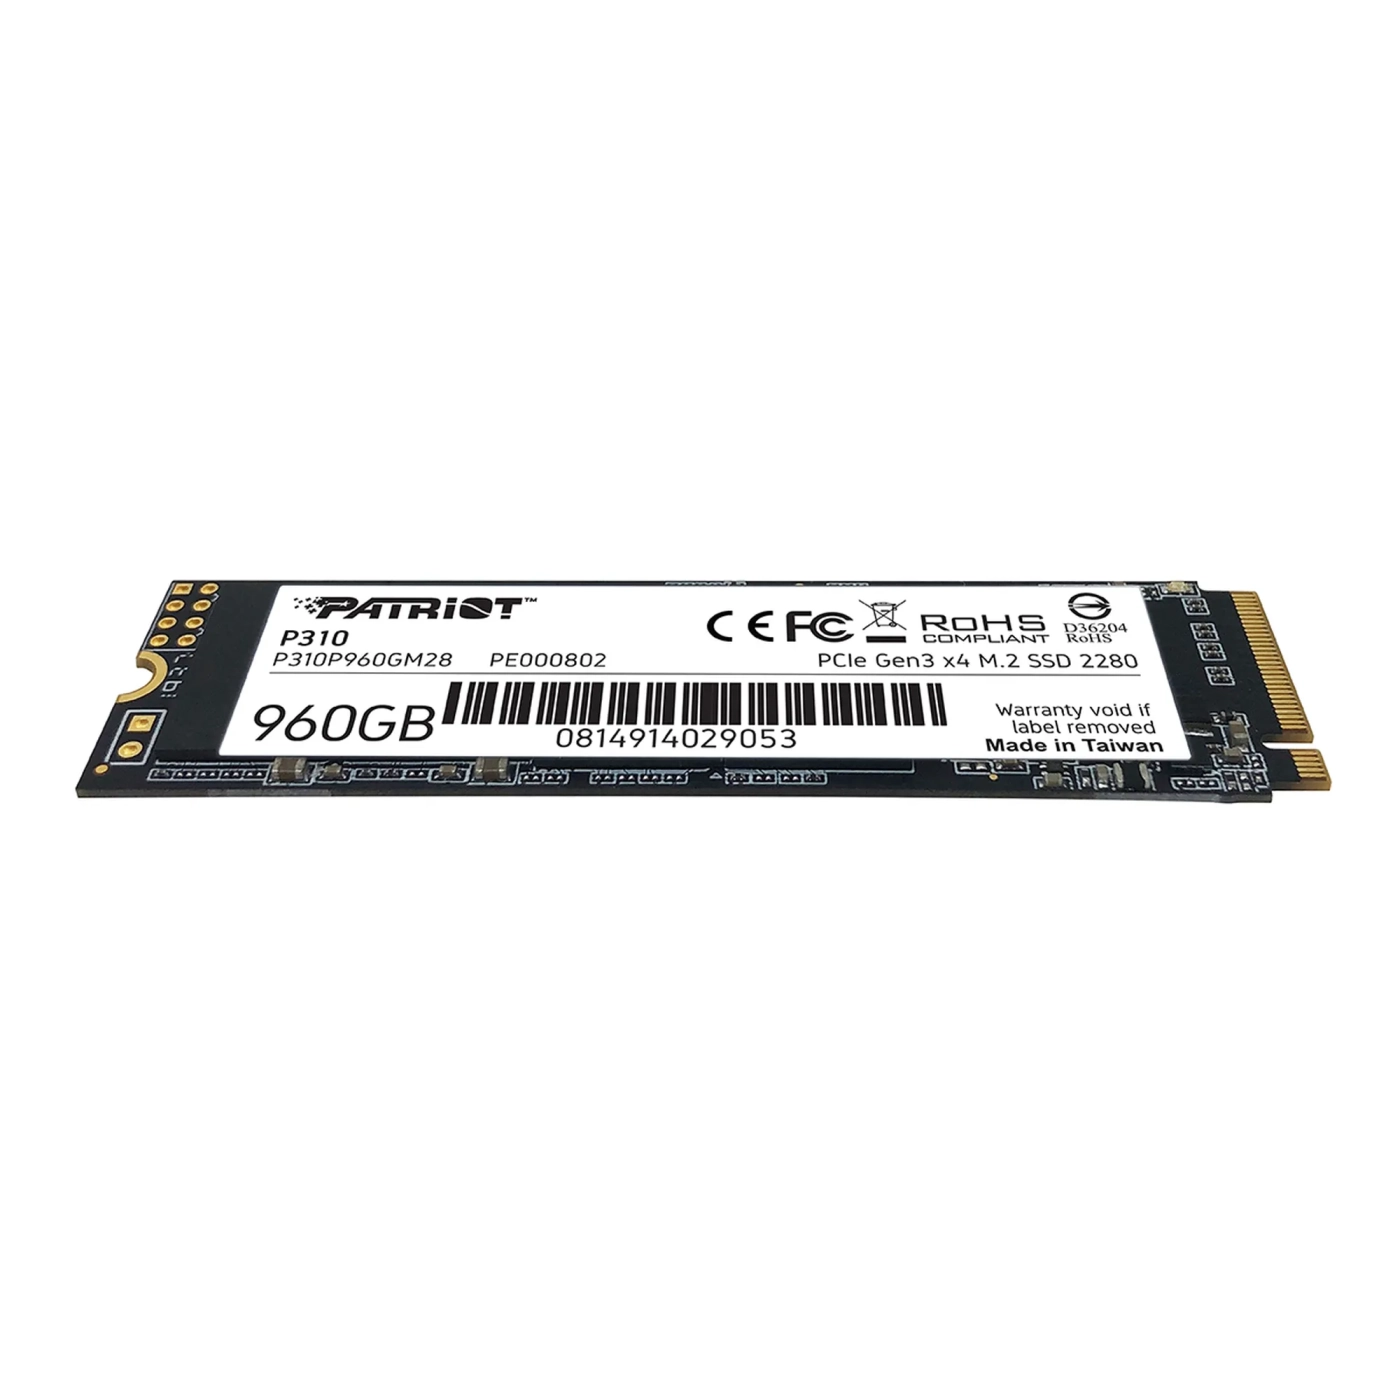 Купить SSD диск Patriot P310 960GB M.2 NVMe (P310P960GM28) - фото 3